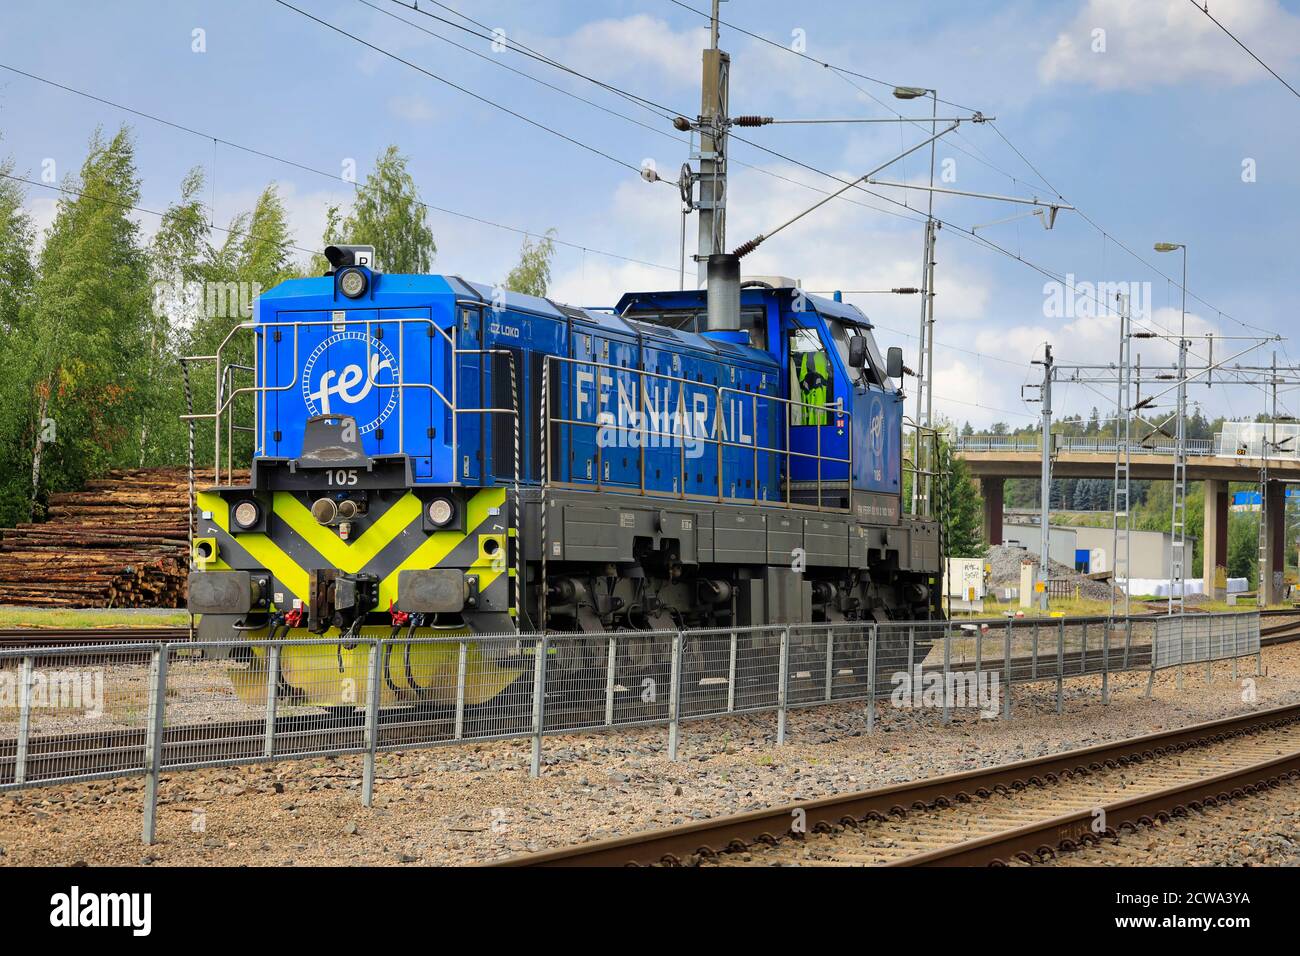 Fenniarail Klasse Dr18 No. 105, CZ Loco baute die Diesel-elektrische Schwerlastlokomotive der Fenniarail Oy im Bahnhof Salo, Finnland. September 2020. Stockfoto